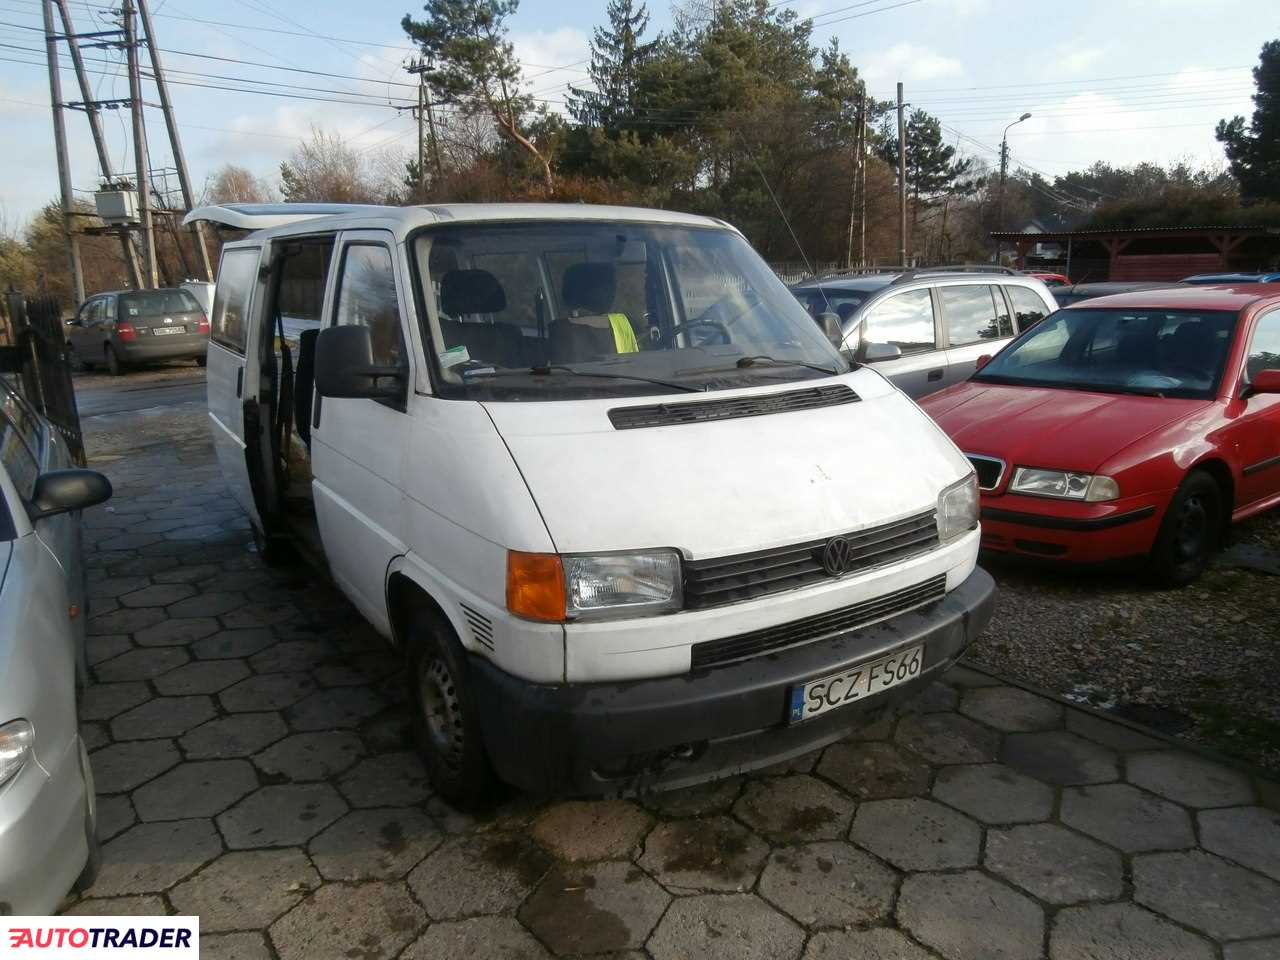 Volkswagen Transporter 1996 1.9